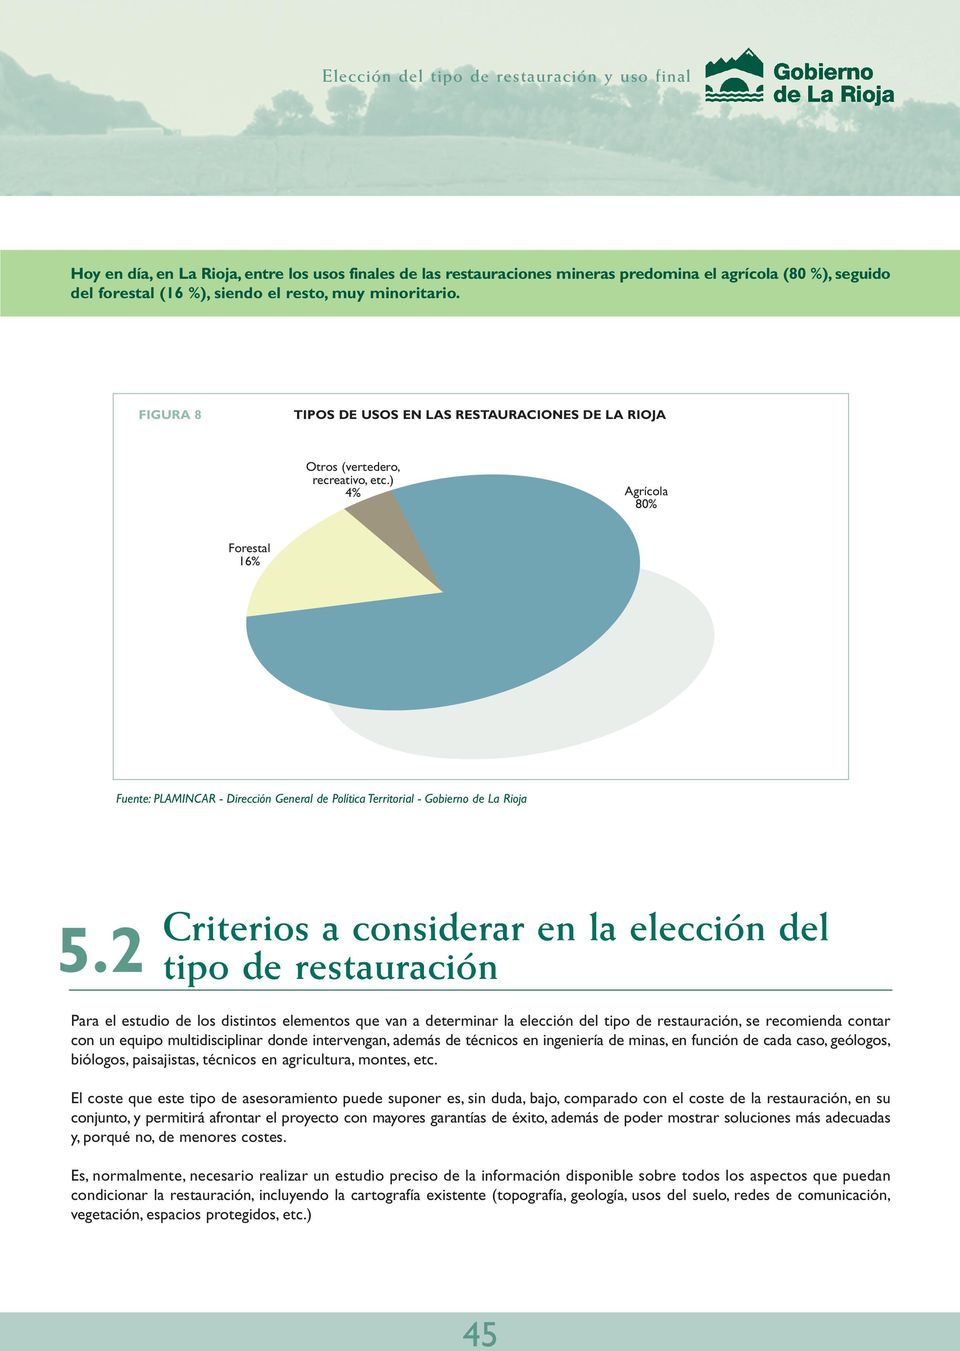 ) 4% Agrícola 80% Forestal 16% Fuente: PLAMINCAR - Dirección General de Política Territorial - Gobierno de La Rioja Criterios a considerar en la elección del 5.